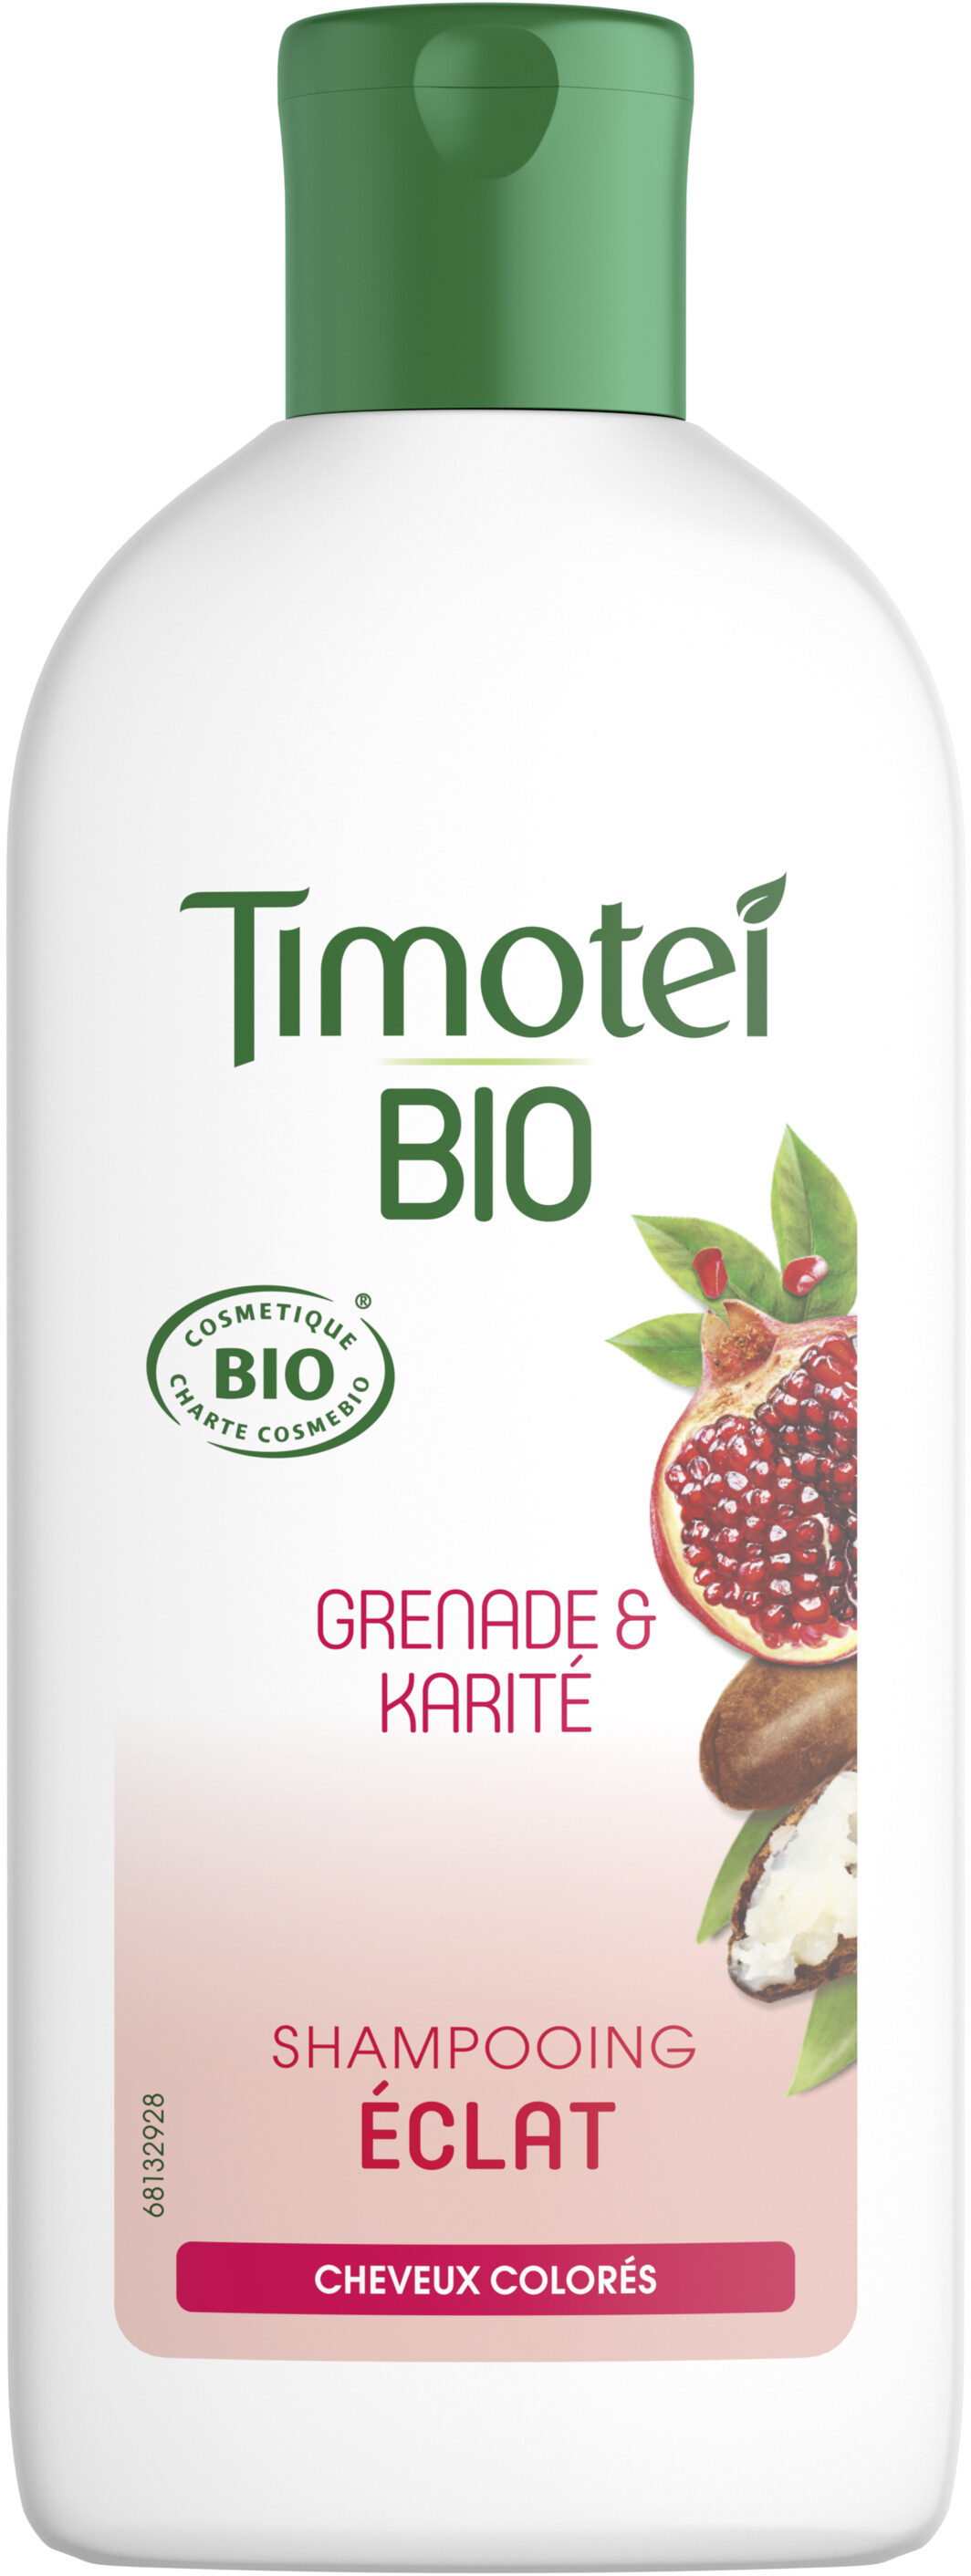 Timotei Bio Shampooing Femme Éclat Cheveux colorés Grenade & Karité 250ml - Product - fr